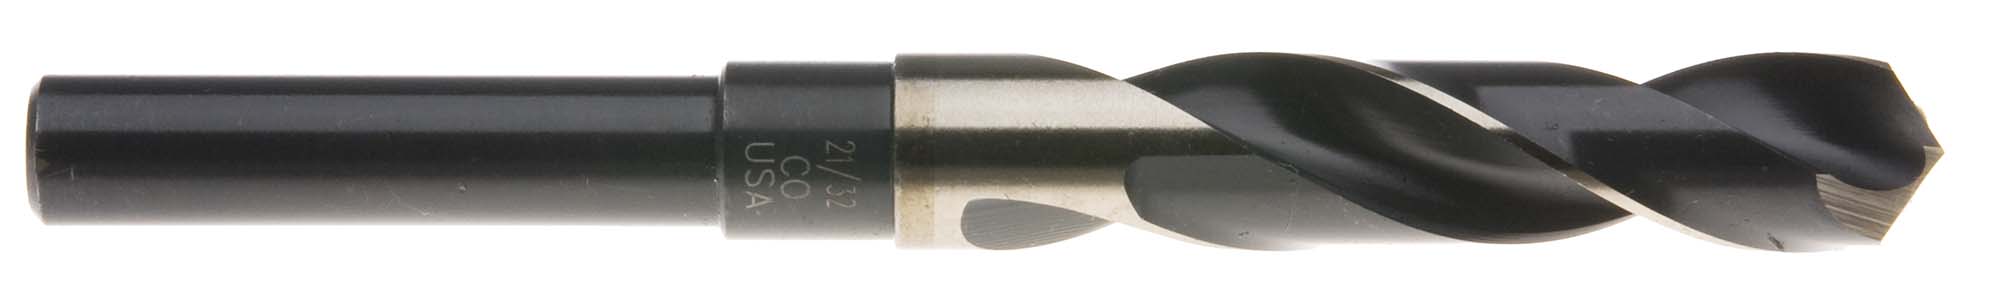 21/32" S and D Drill (1/2" shank) USA Cobalt